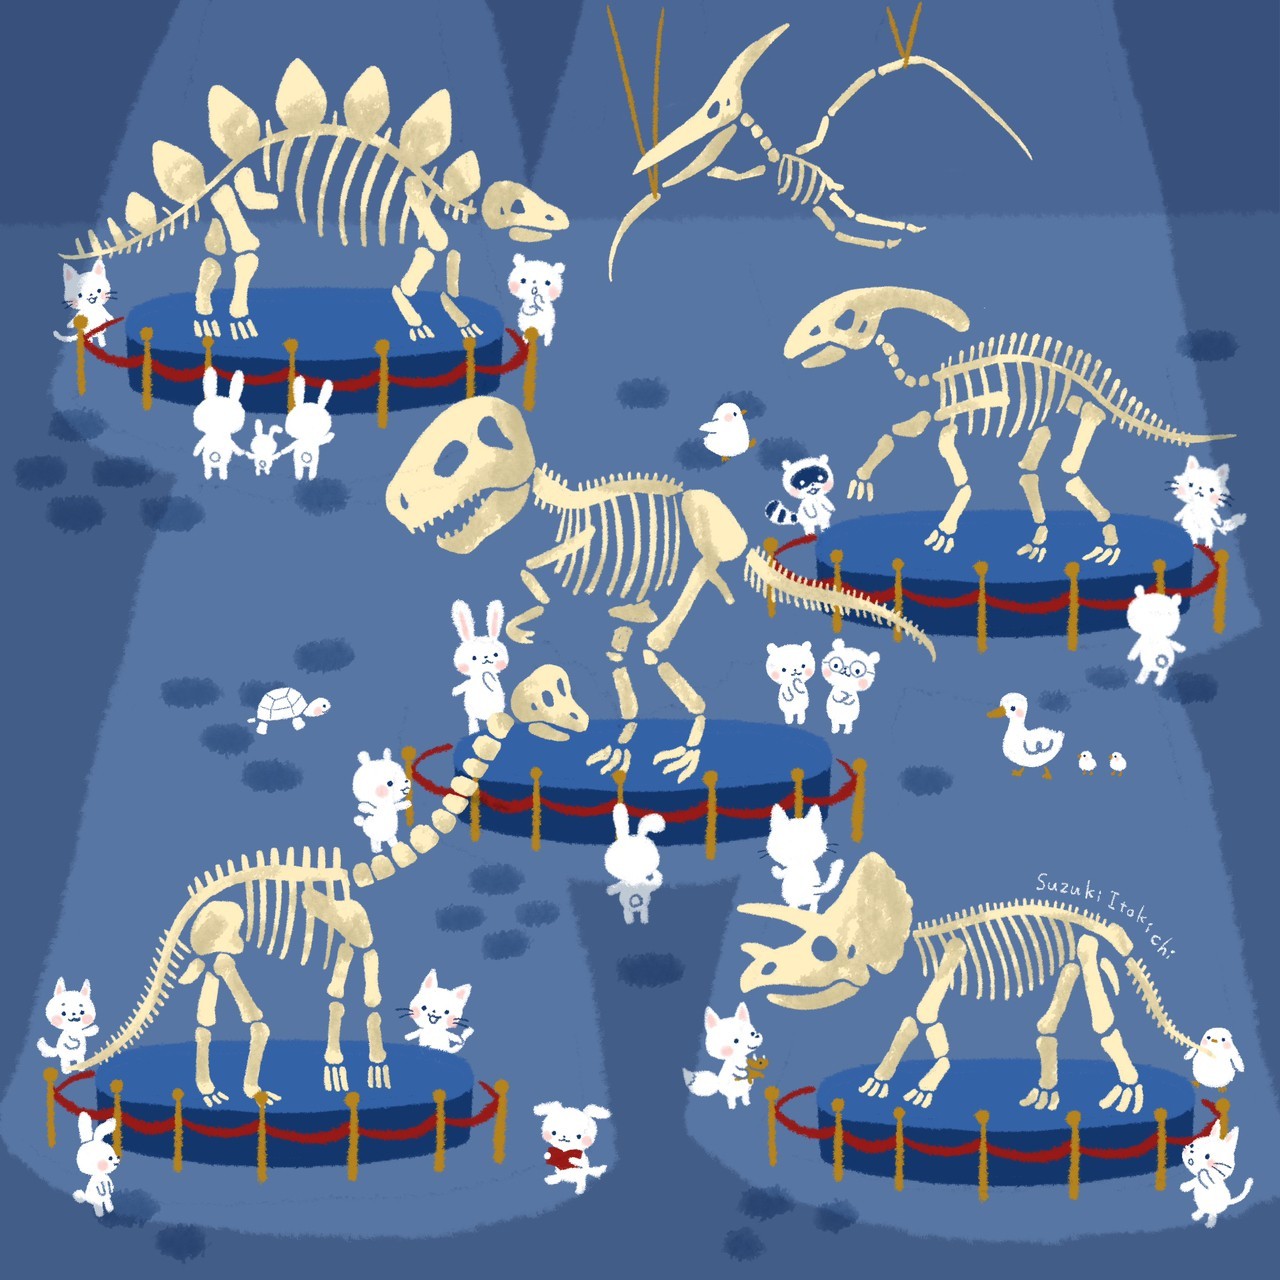 恐竜大博物館(2020)
こんなにも大きな生き物たちが いたなんて